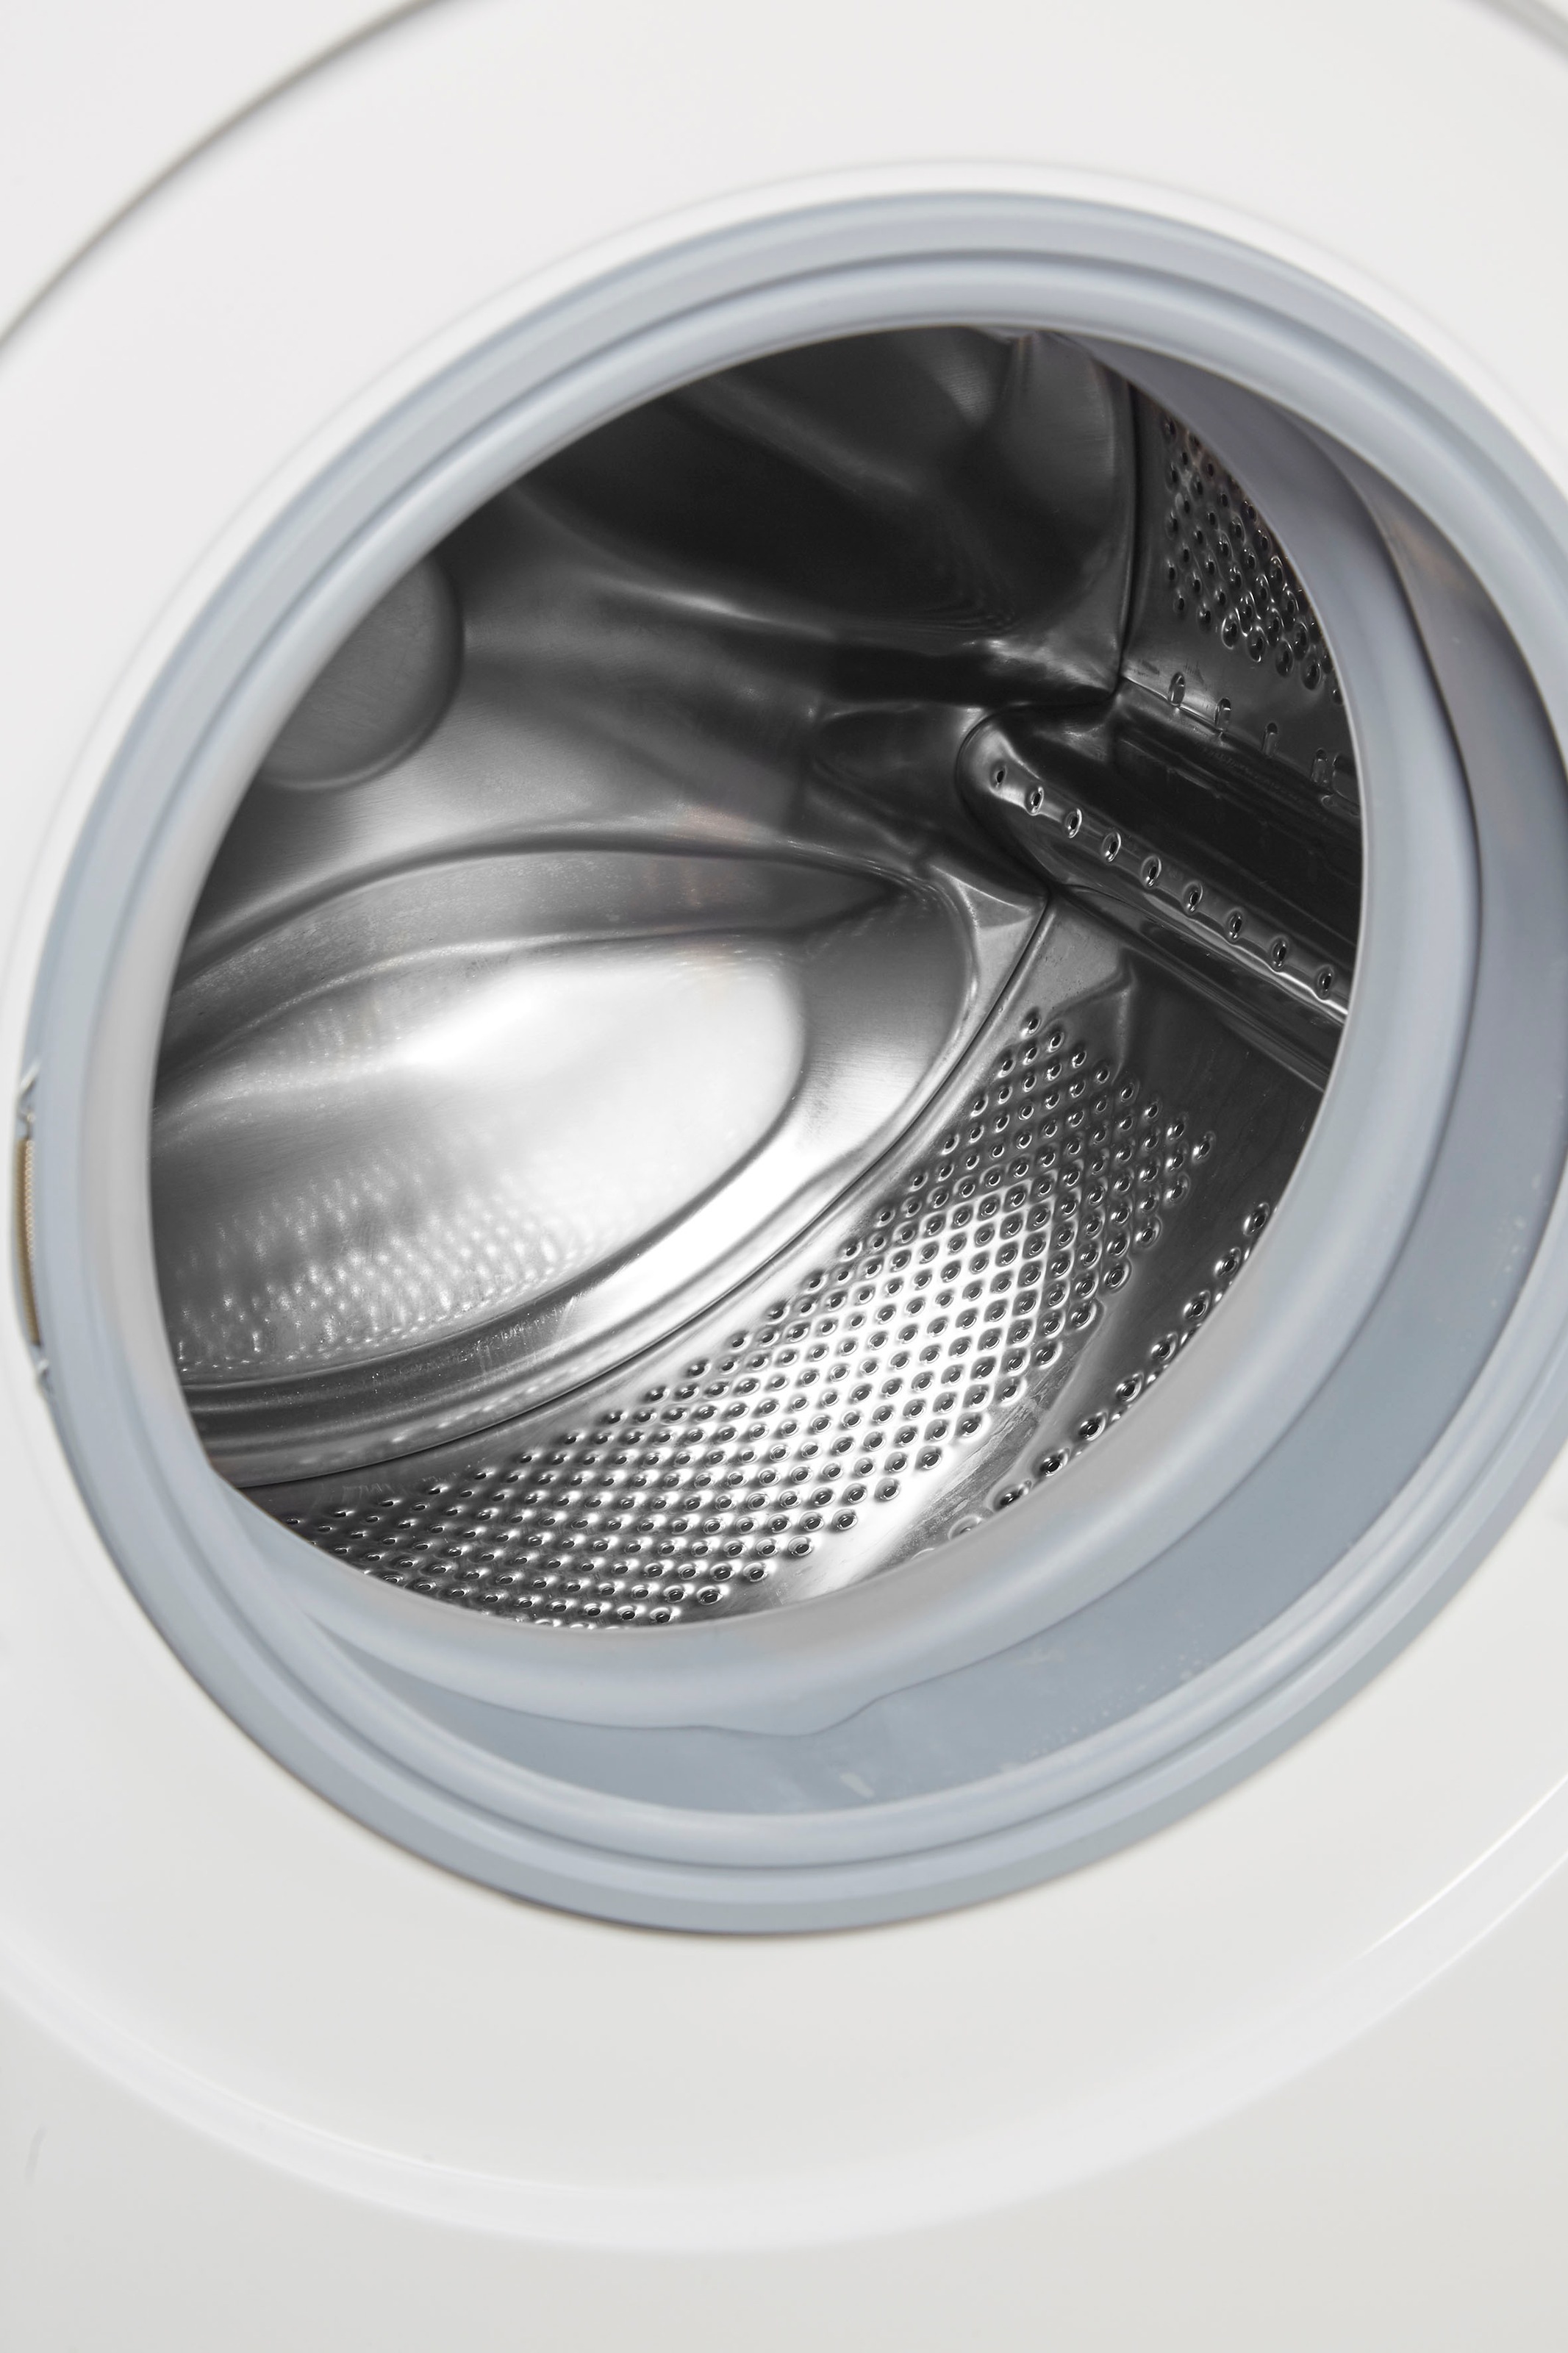 BOSCH Waschmaschine, WAN28128, 8 U/min 1400 online kg, kaufen